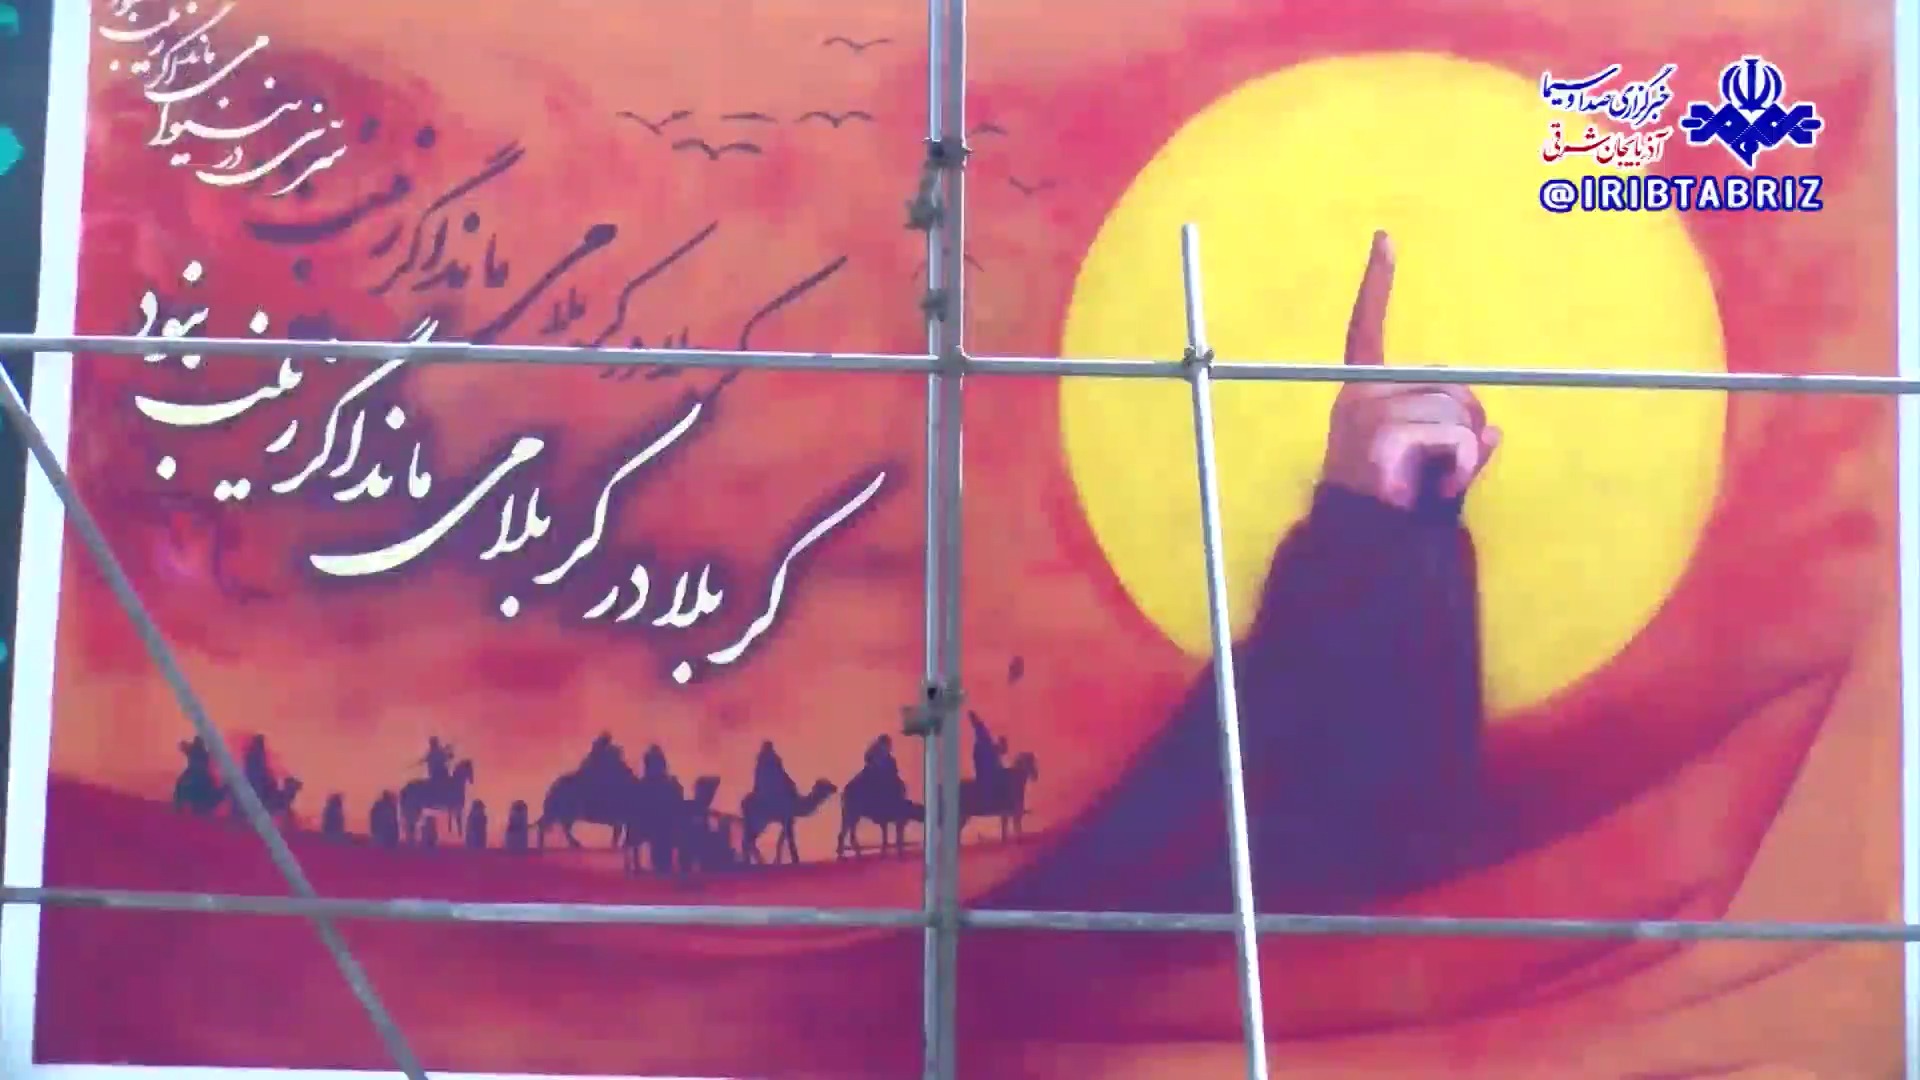 اجرای دیوارنگاره محرّم در میدان امام حسین(ع) مراغه